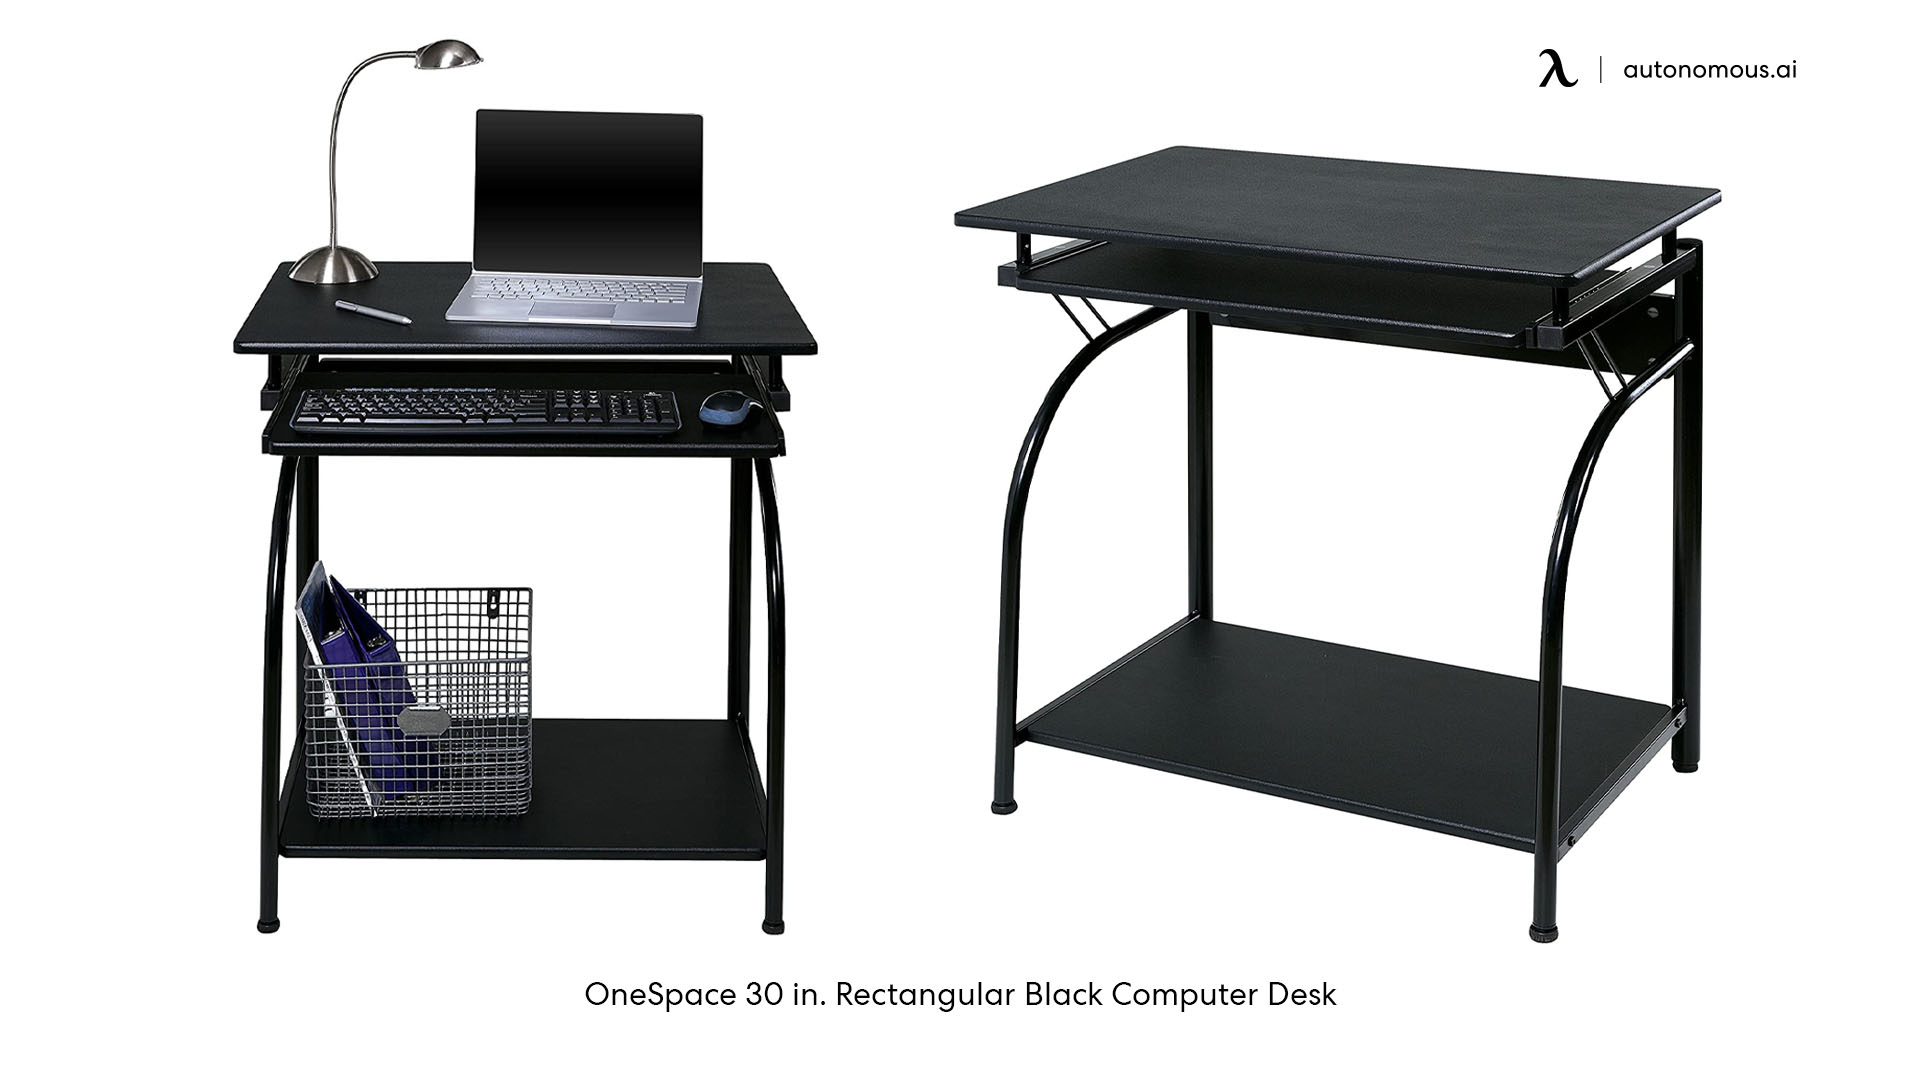 OneSpace 30 in. Rectangular Black Computer Desk